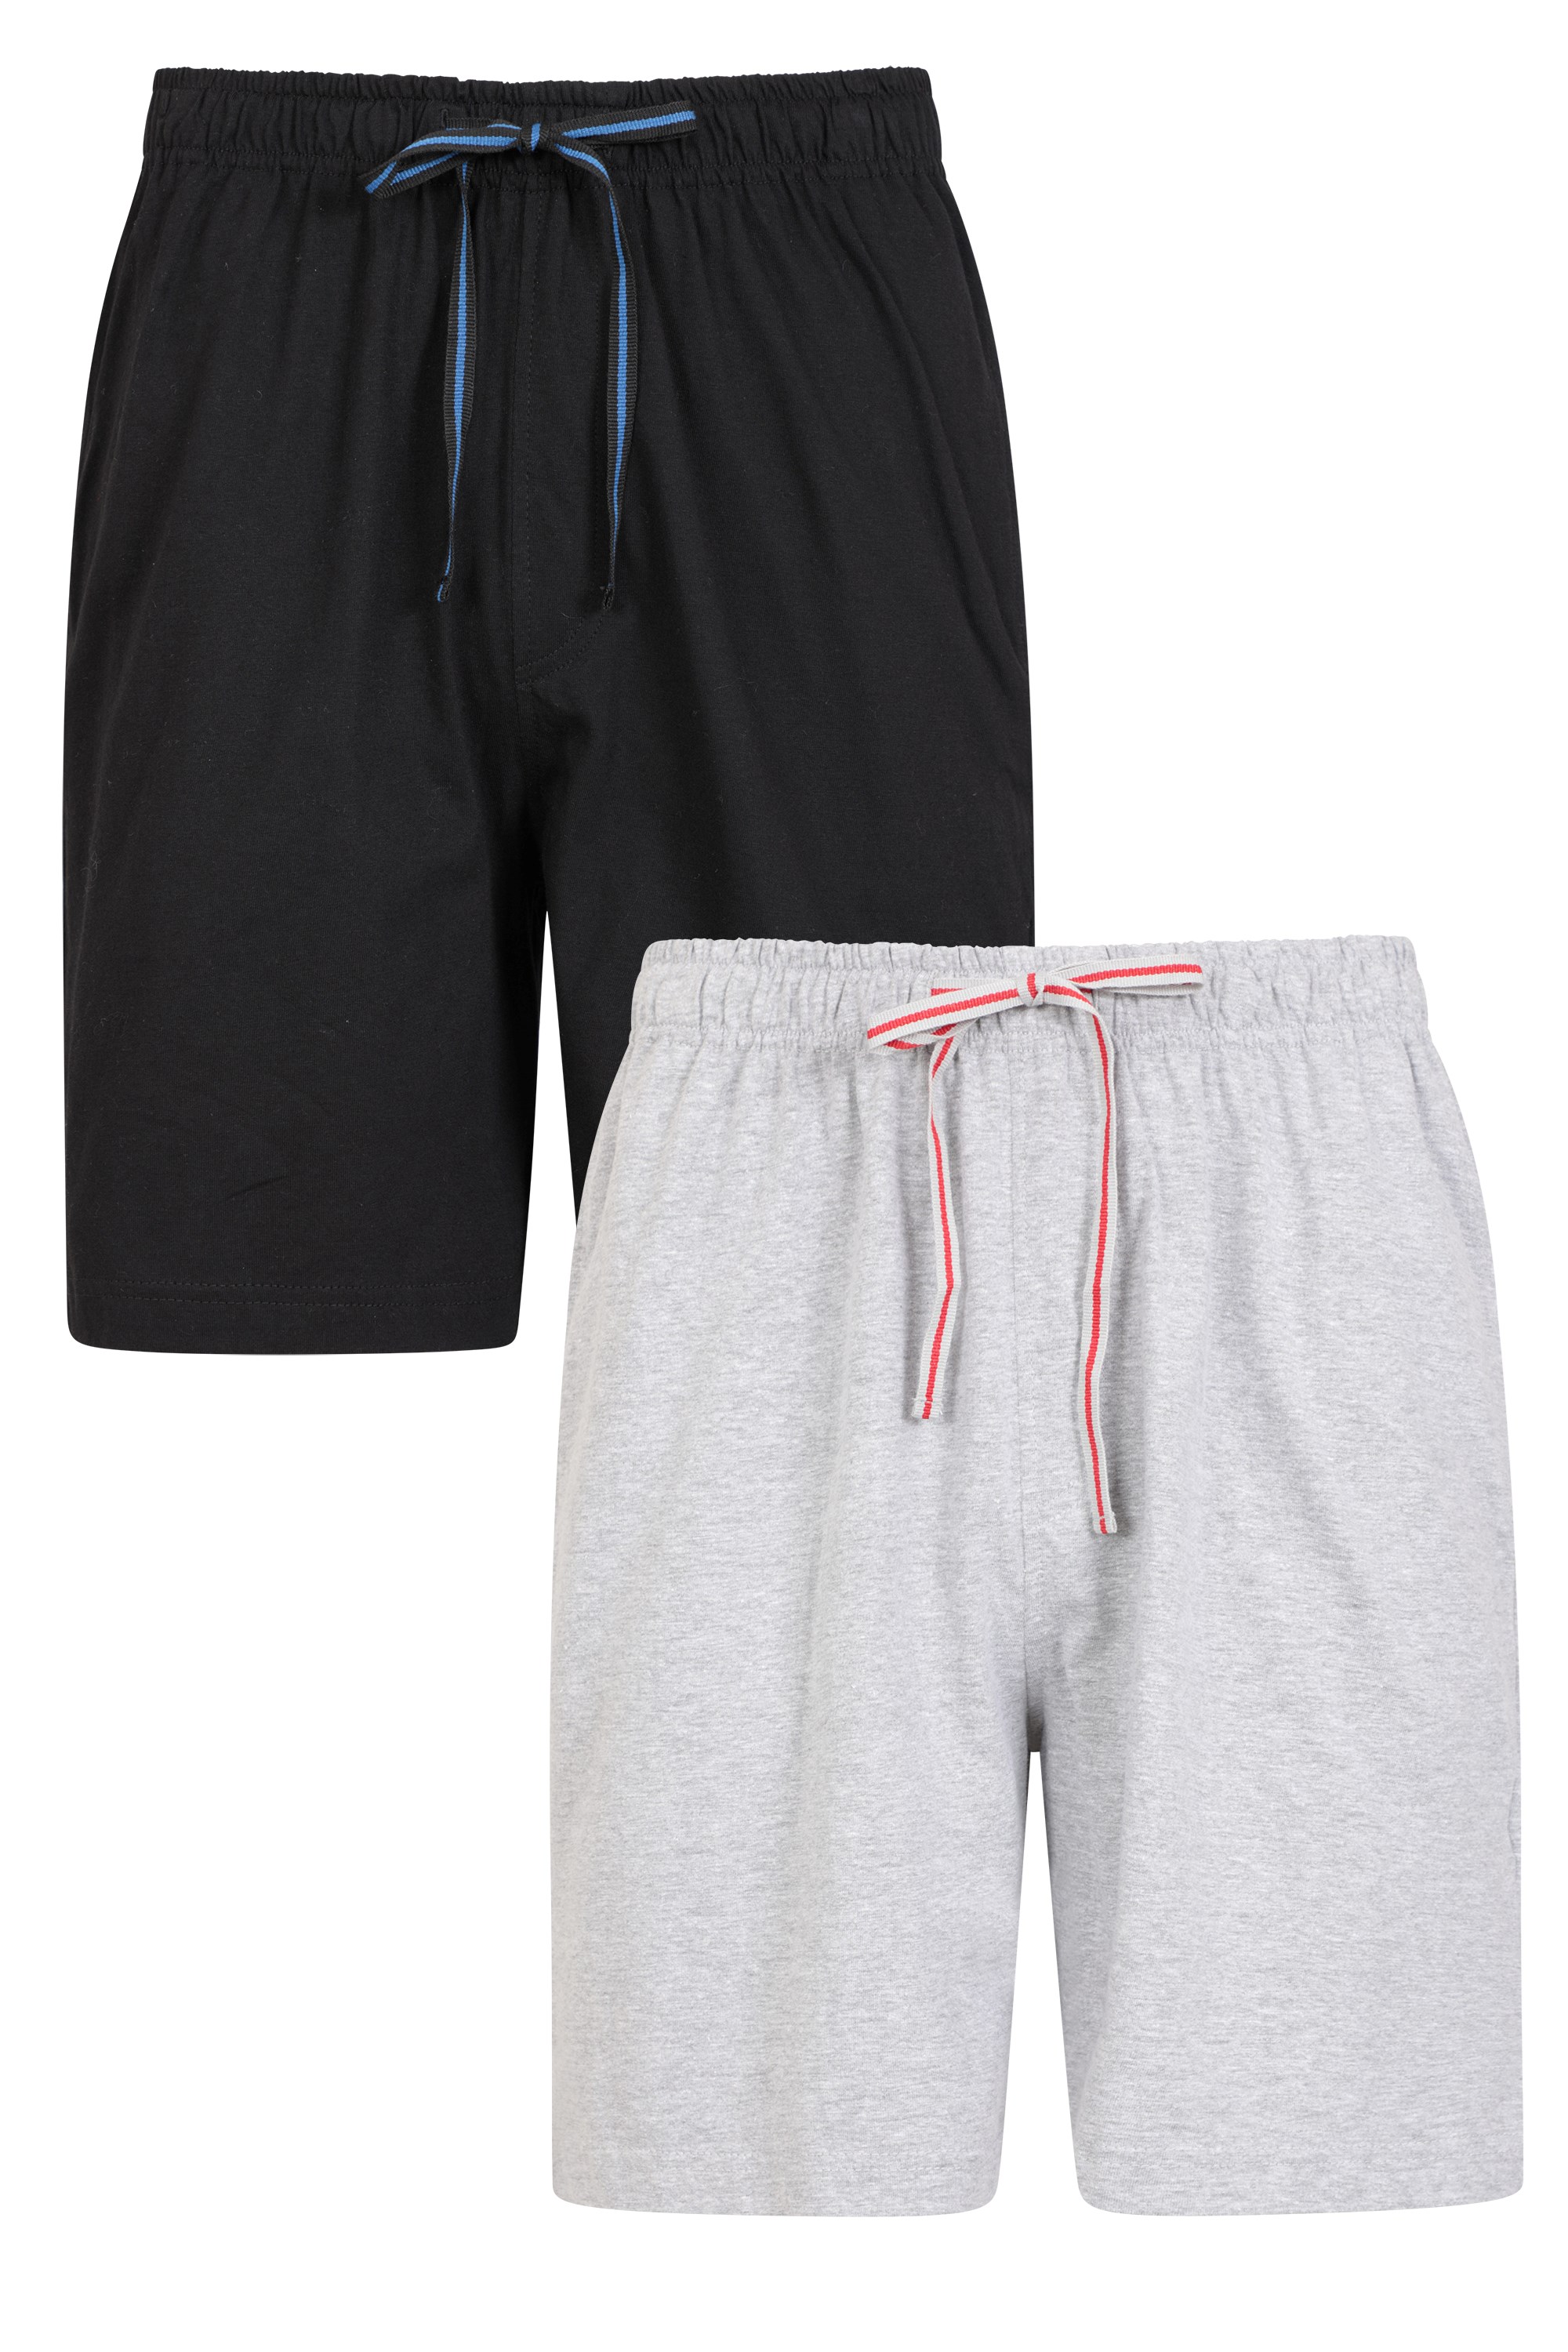 Mens Pyjama Shorts 2-pack - Black